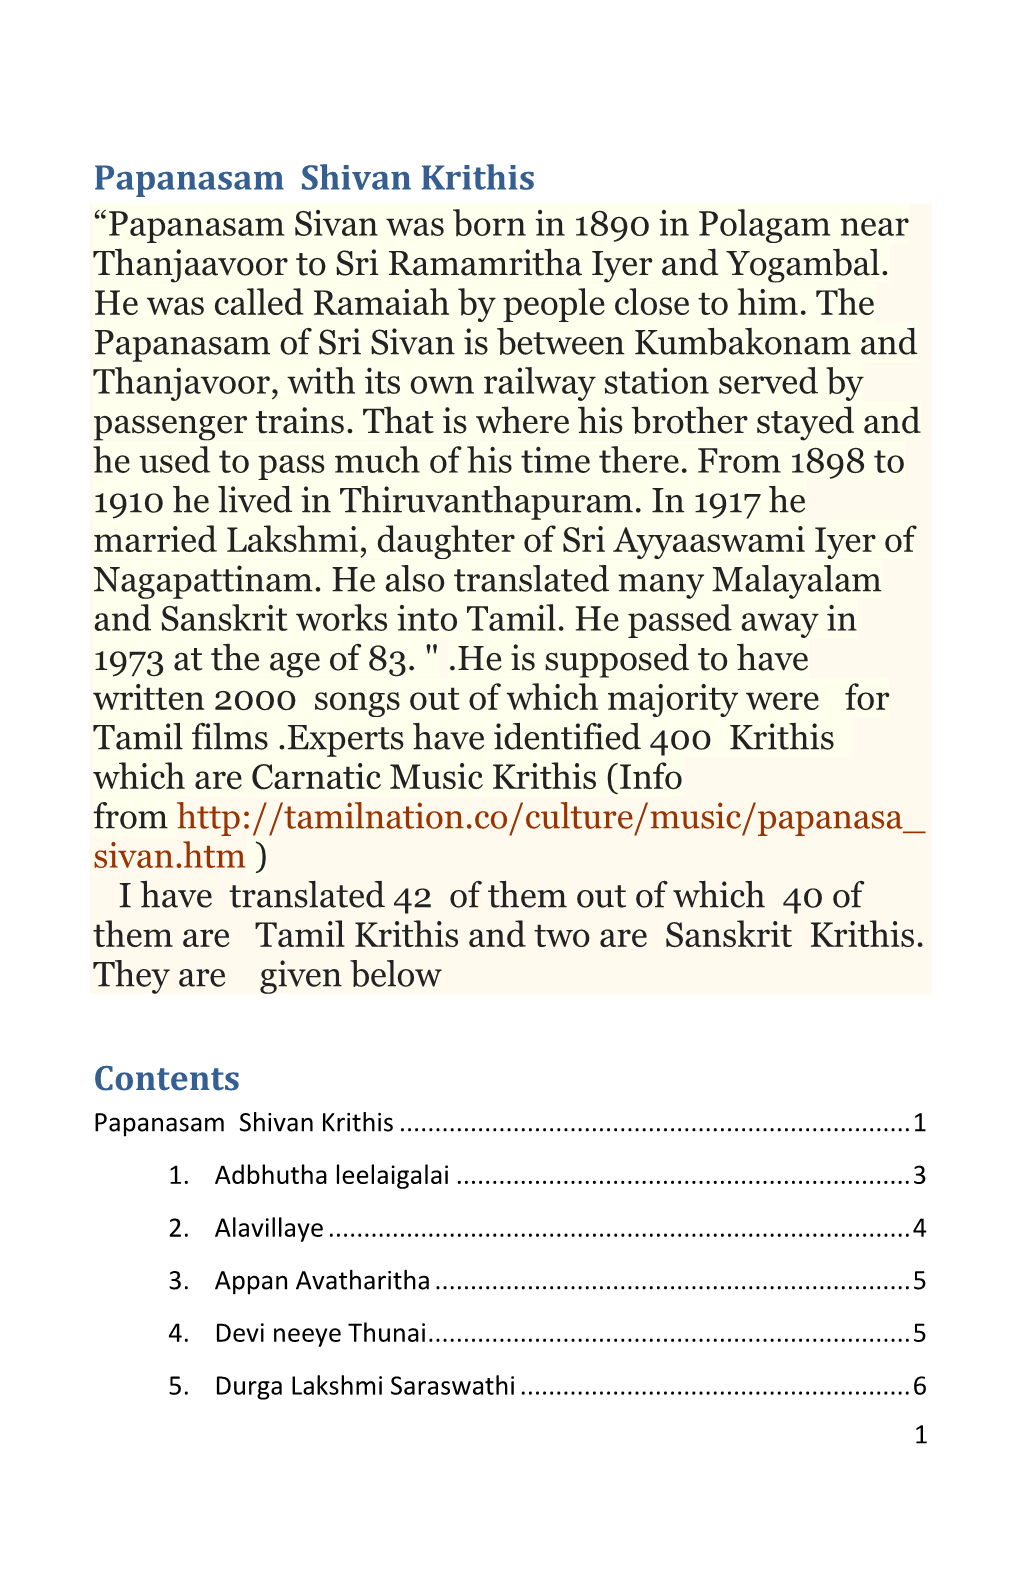 Papanasam Shivan Krithis Contents